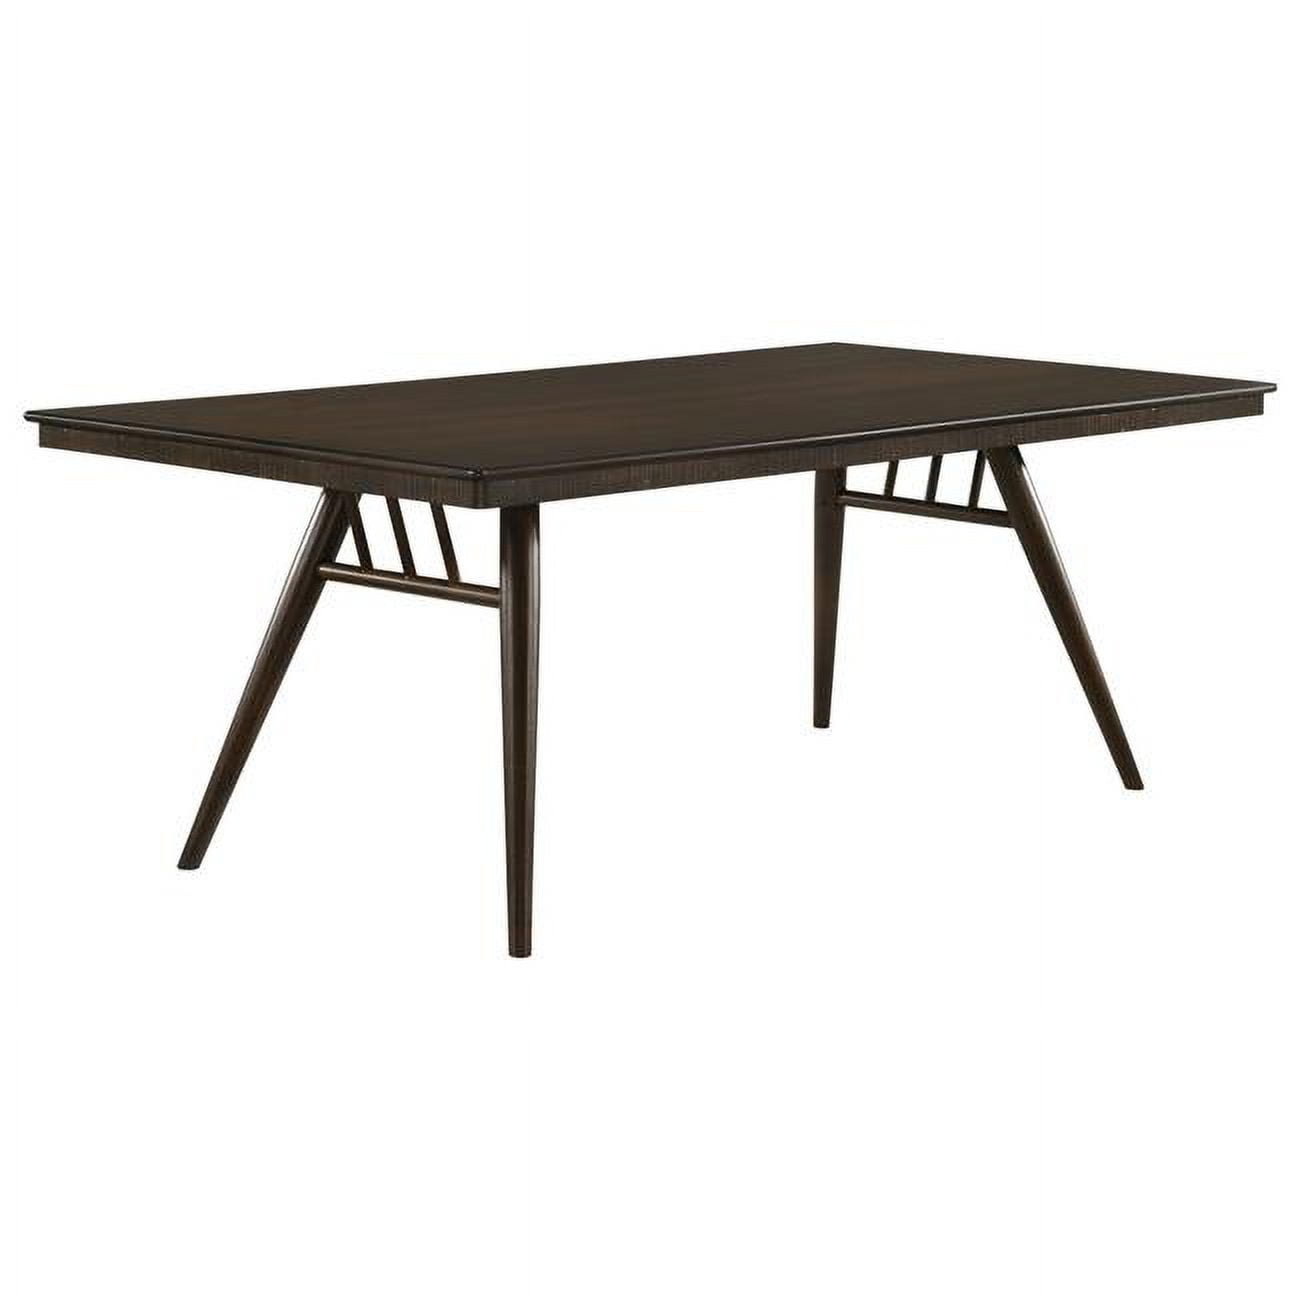 Benjara Benzara Oss 80 Inch Rectangular Dining Table, Fluted Apron, Dark Walnut Brown Wood